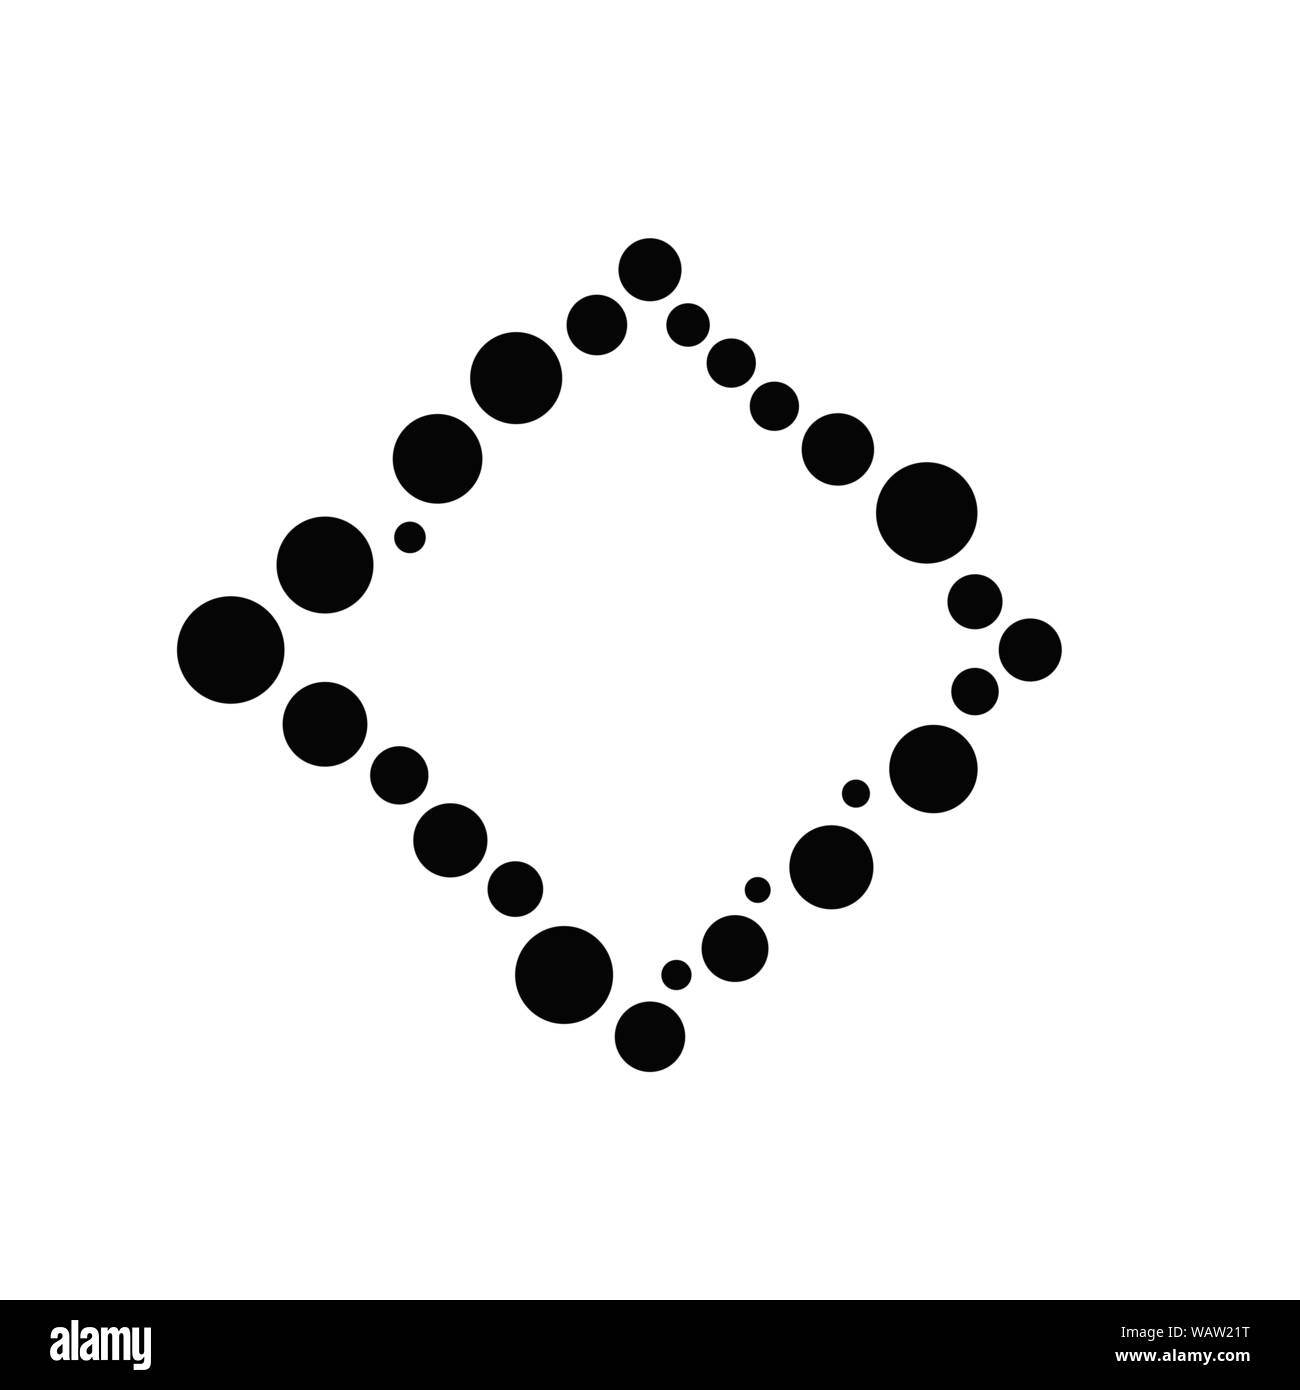 Insignia del círculo mínimo fotograma de fondo - monocromo abstracto geométrico moderno ilustración vector con espacio en blanco en el centro Ilustración del Vector